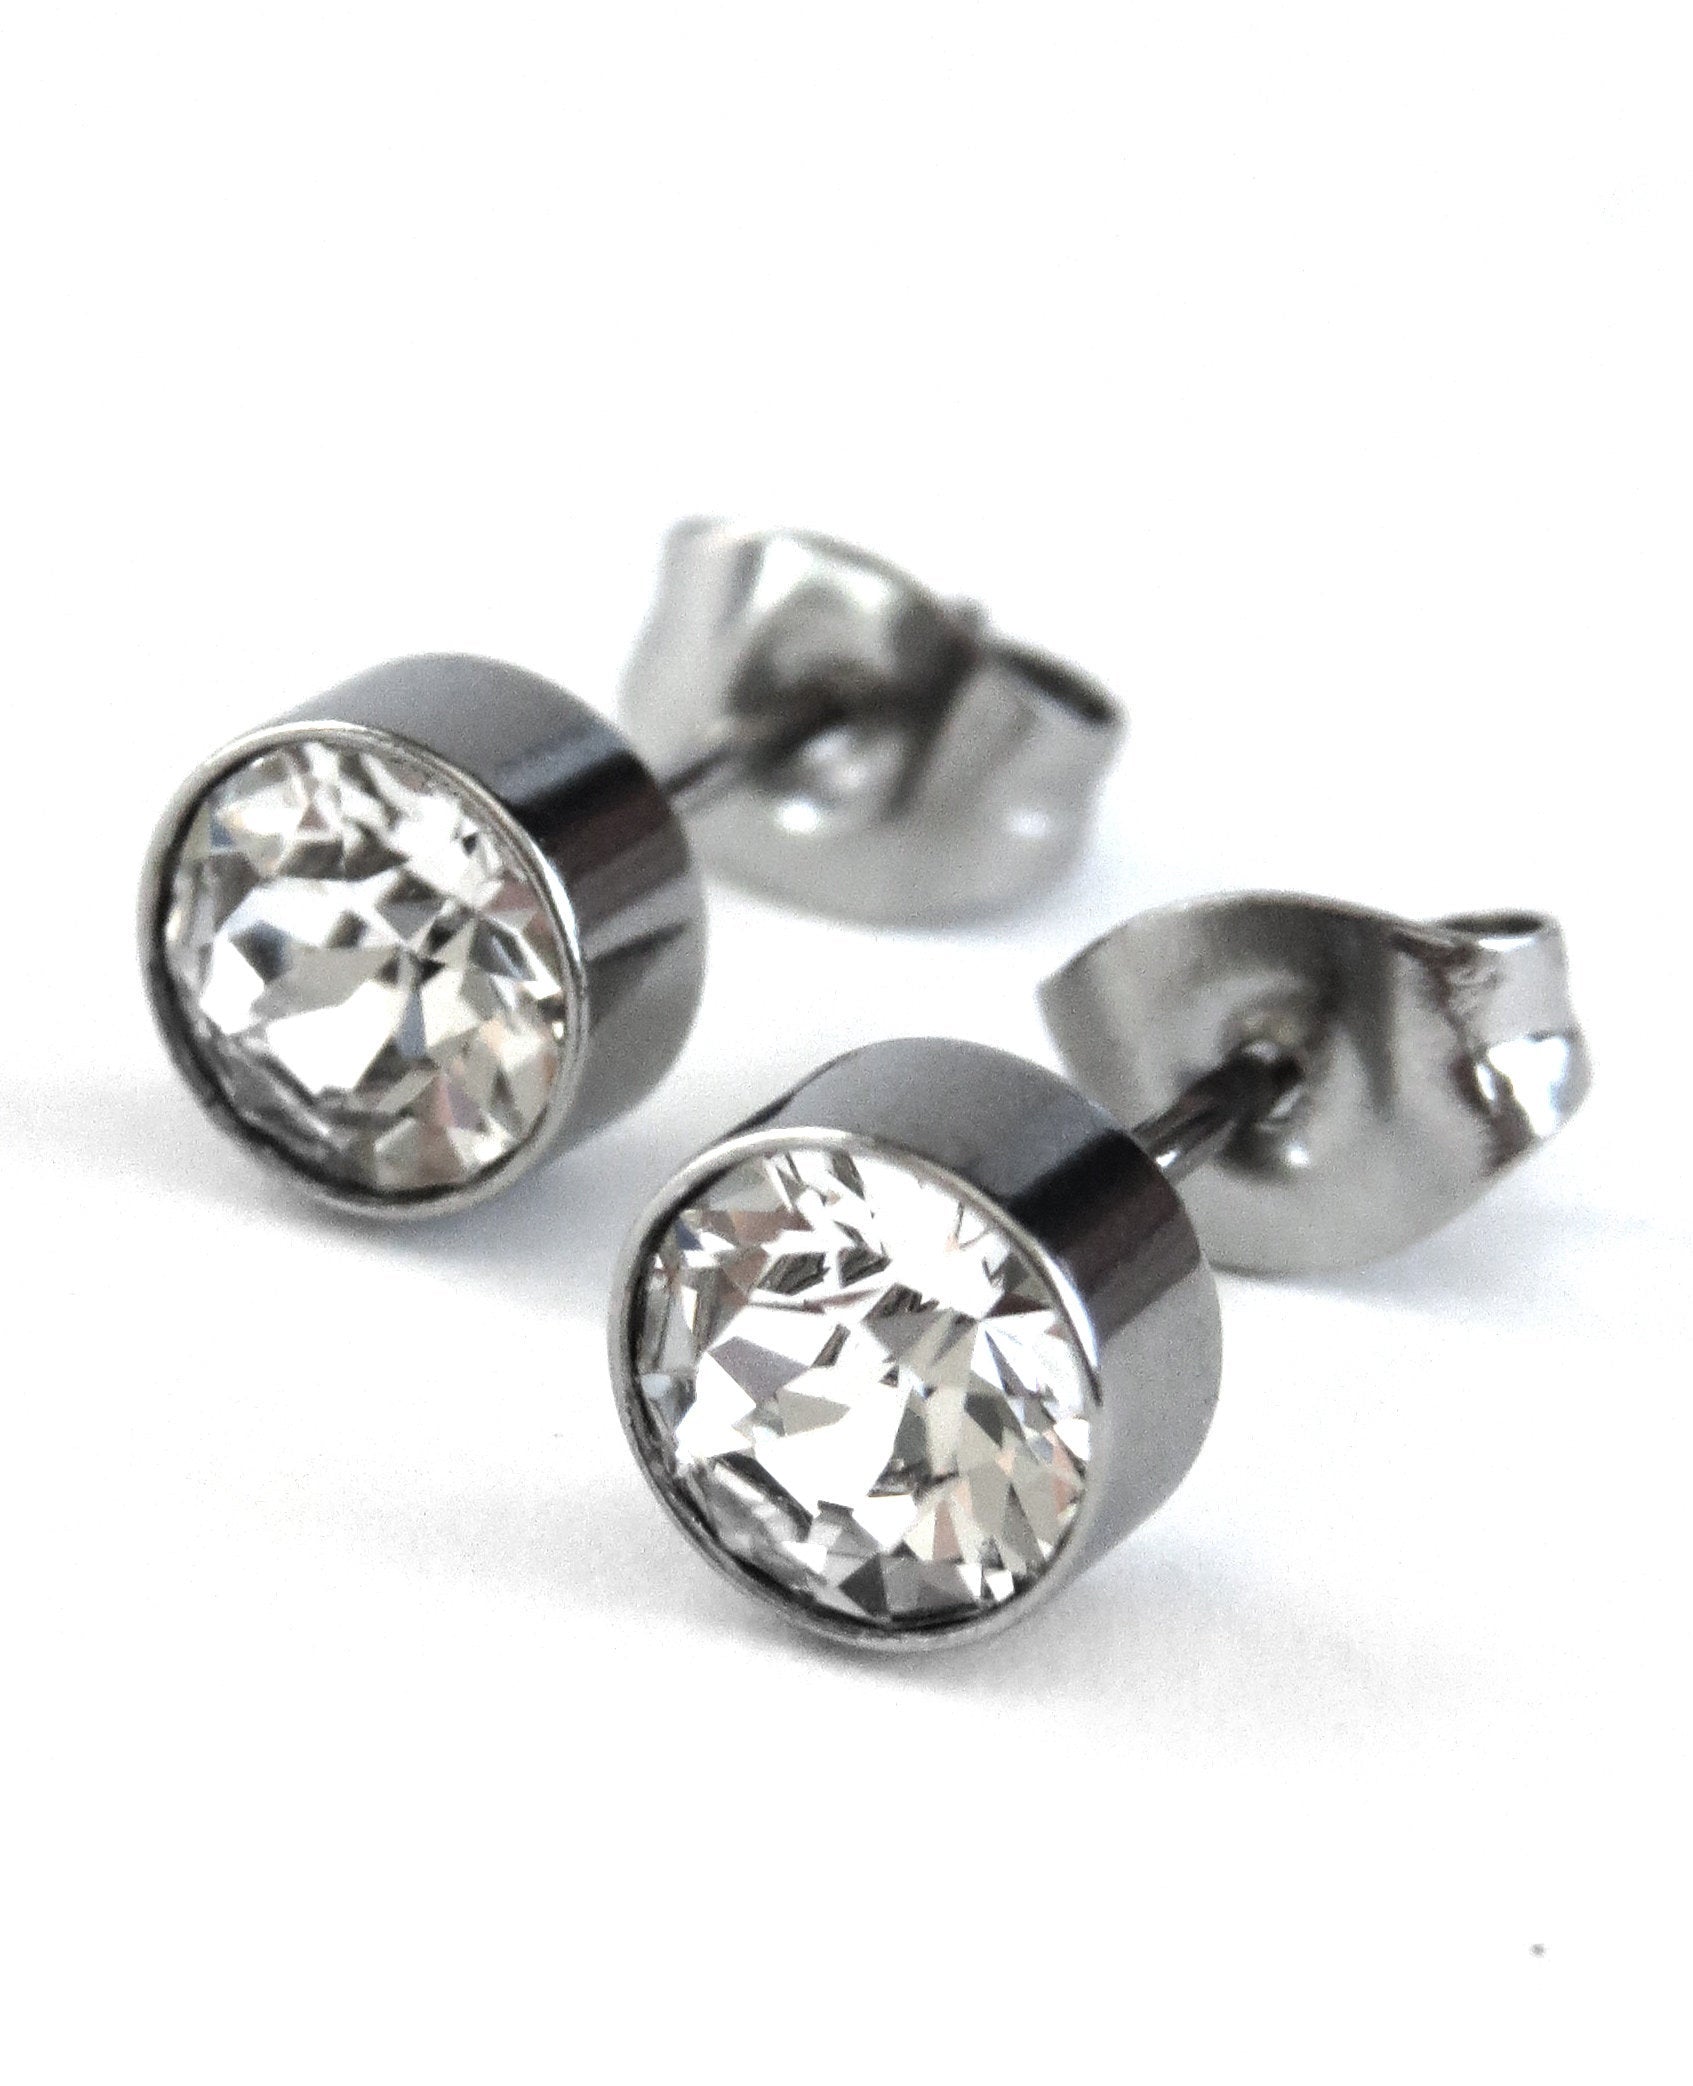 Clear Crystal Stud Earrings with Swarovski Crystal, Stainless Steel, Unisex Post Earrings, Mens Stud Earrings, Modern Stud Earrings